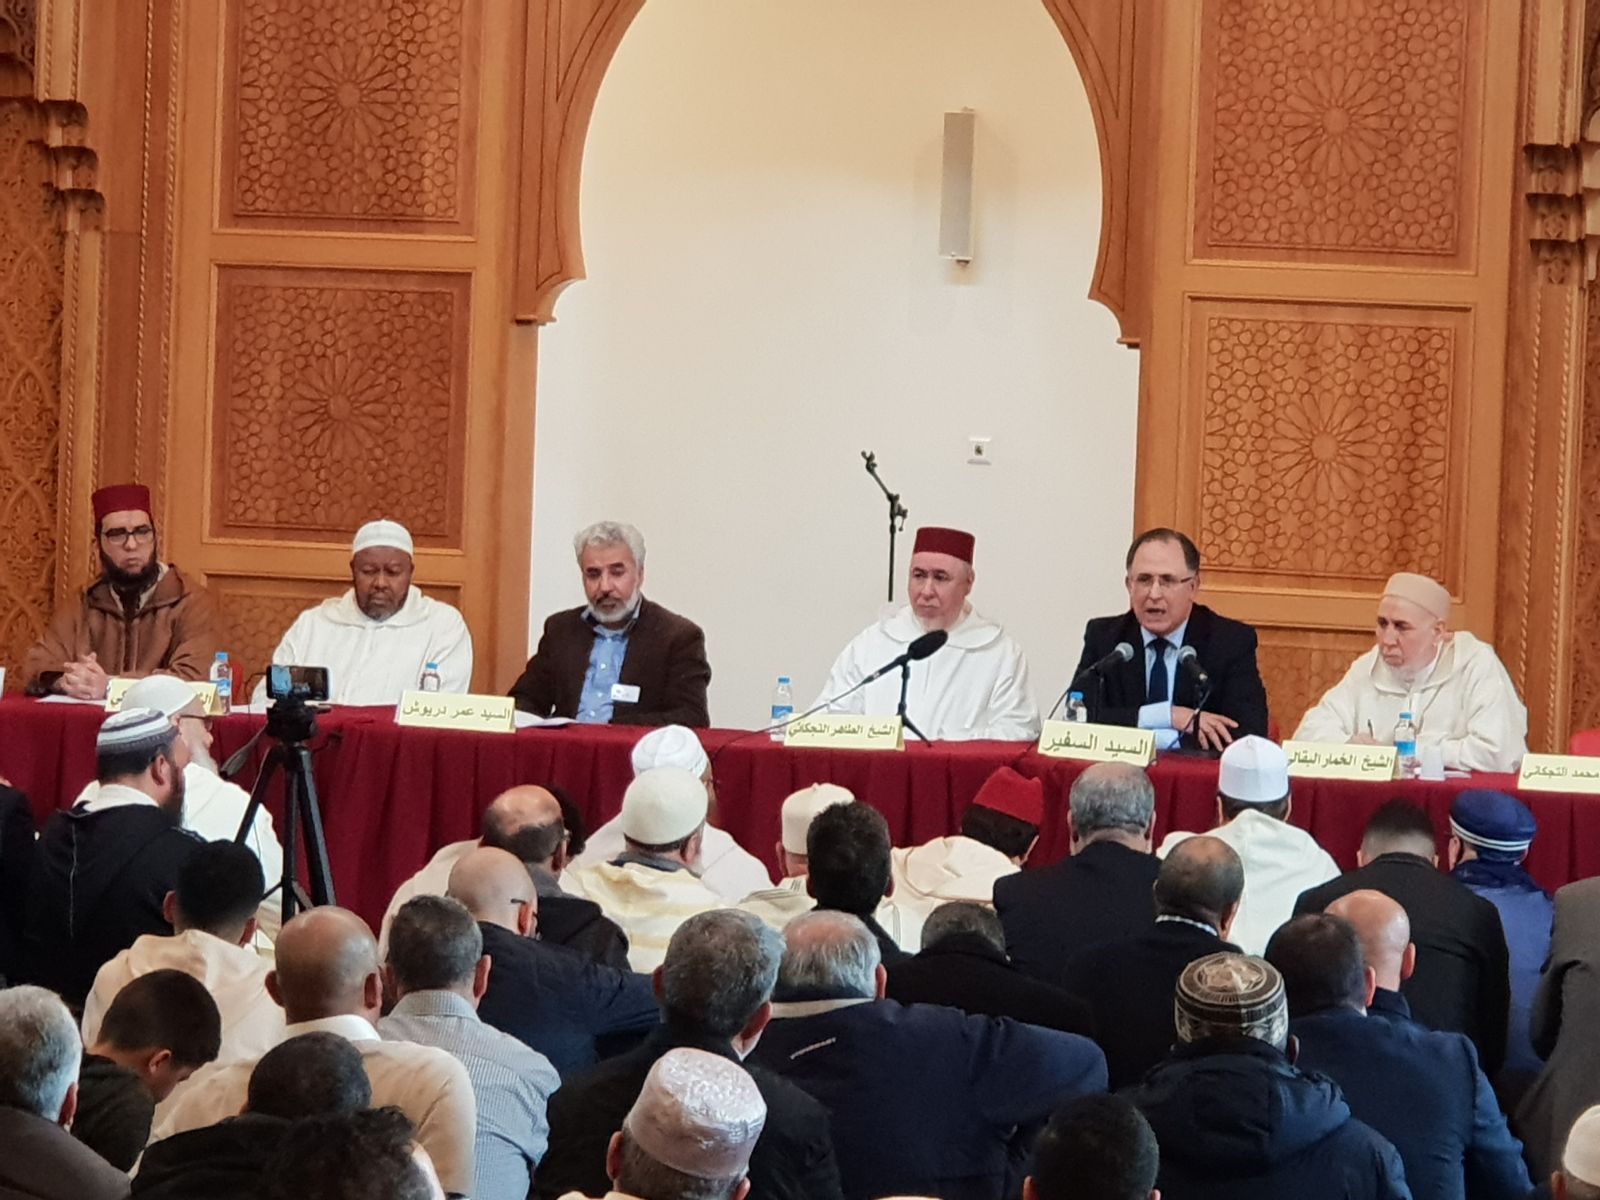 رئيس المجلس الأوروبي للعلماء المغاربة يشارك في حفل افتتاح المركز الإسلامي المغربي مسجد الهجرة بمدينة ليدن الهولندية.